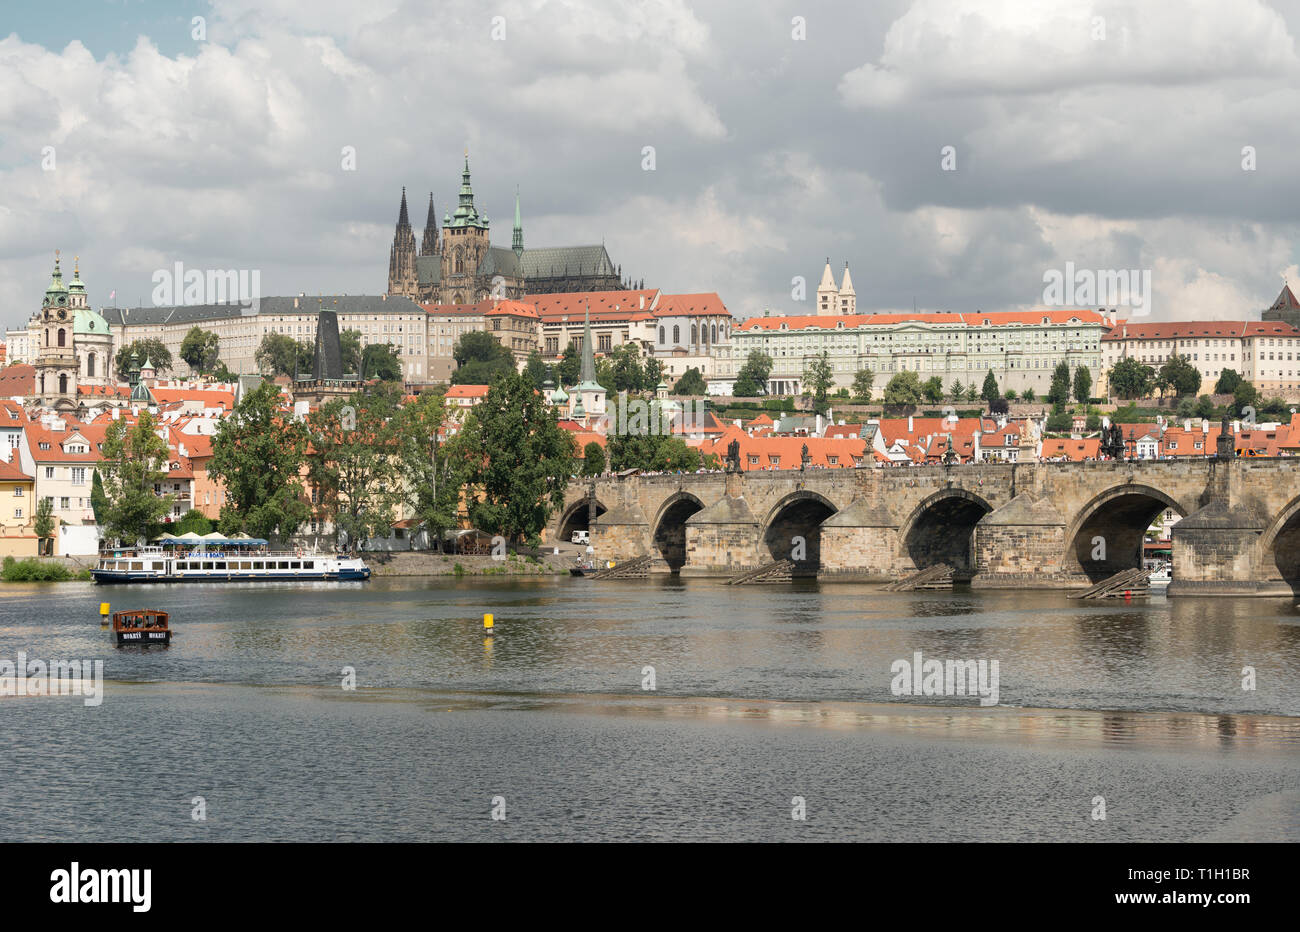 Prague : le château de Prague, Mala Strana, la cathédrale Saint-Guy, le Pont Charles, la Vltava Banque D'Images